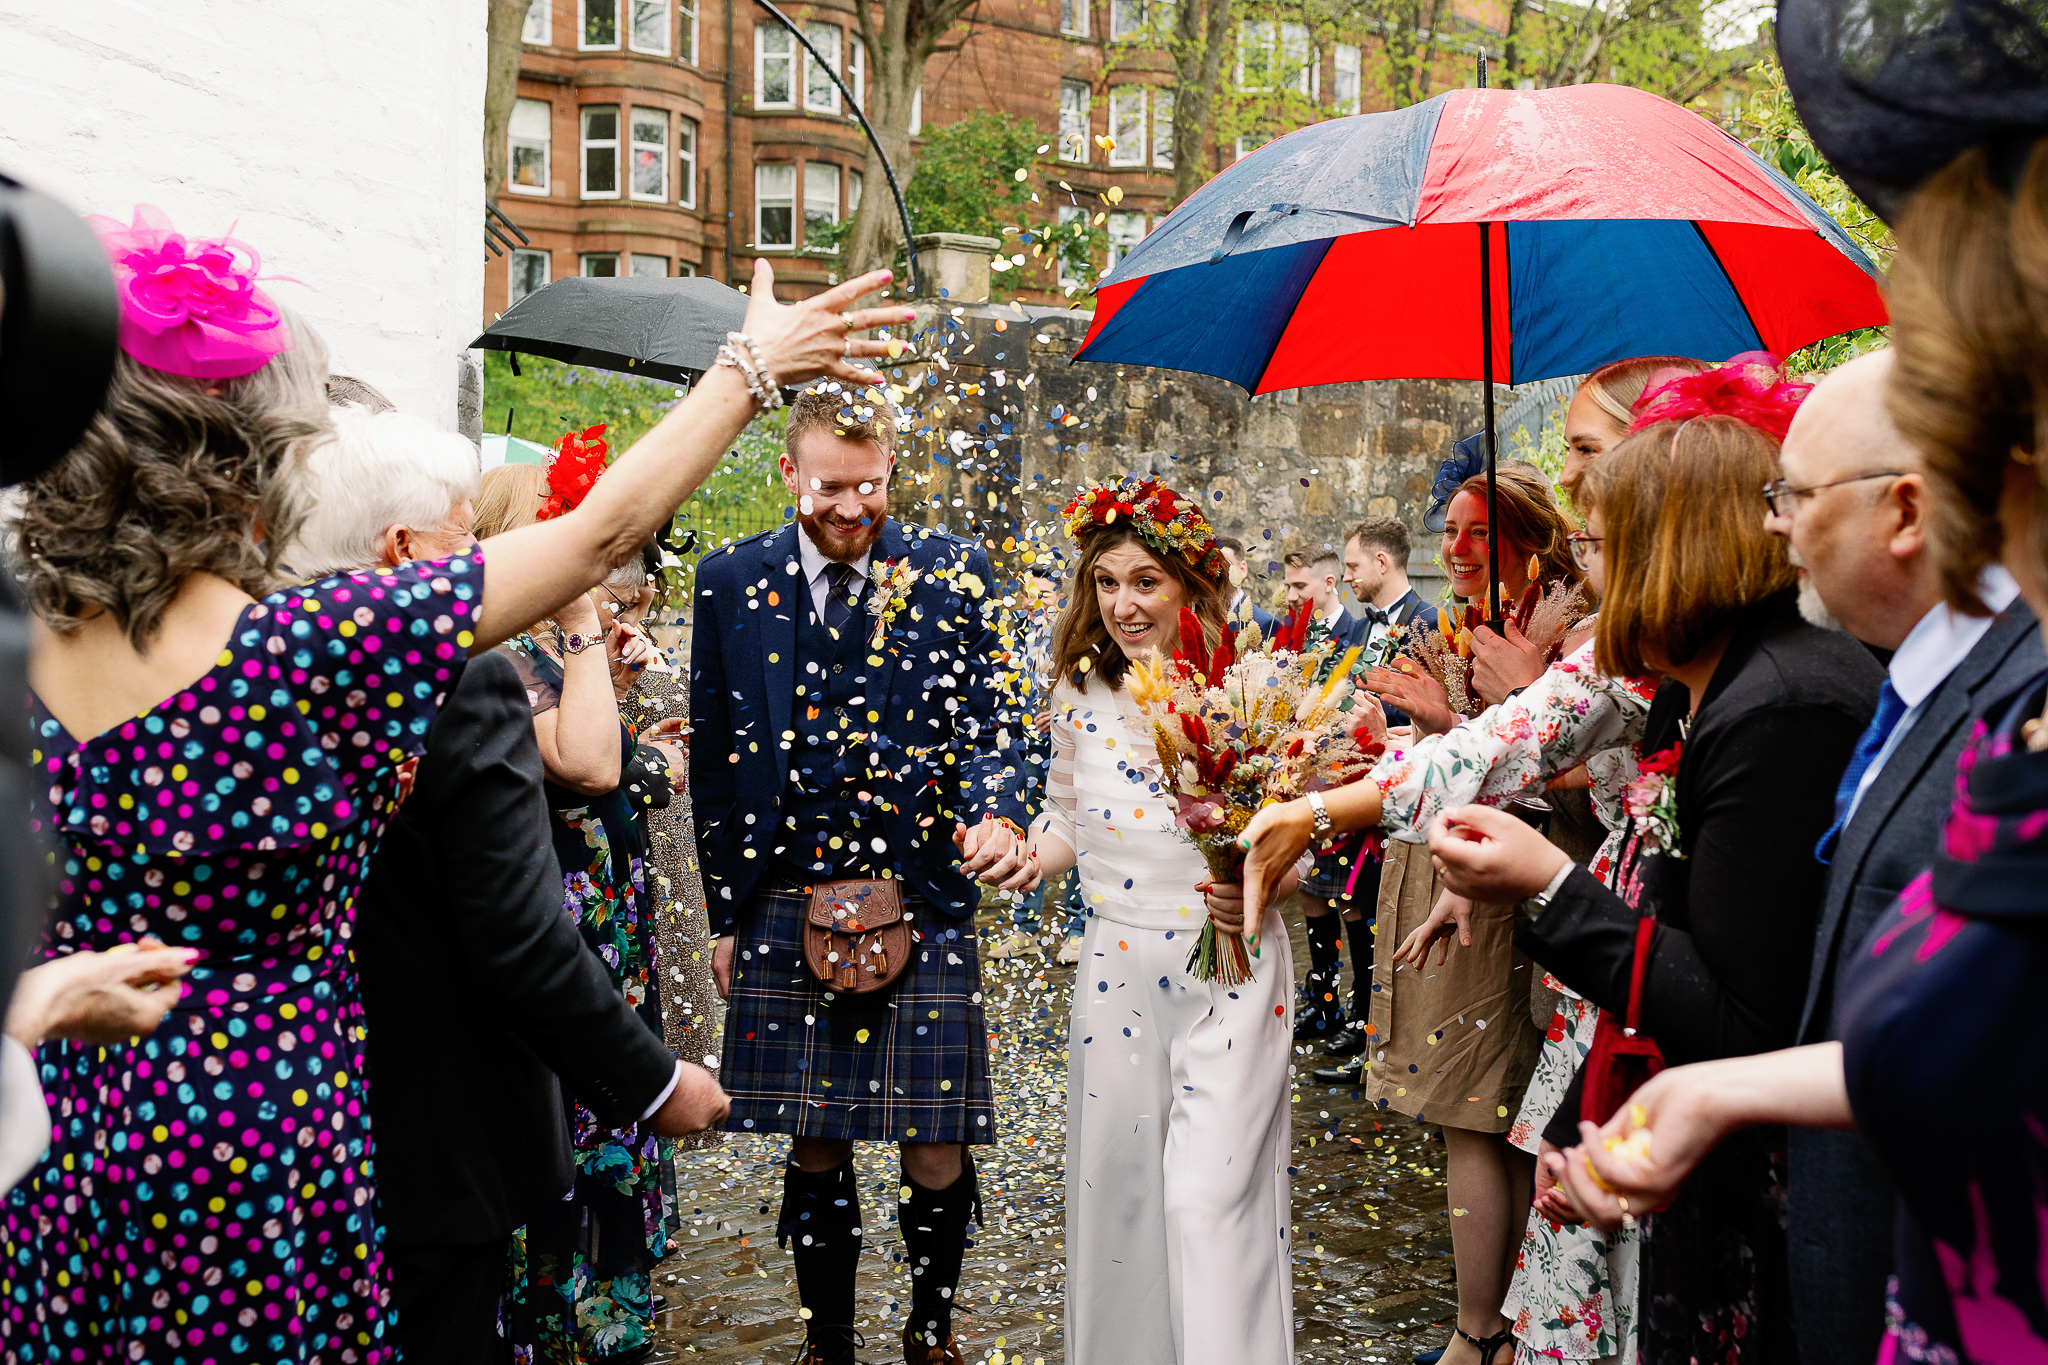 Colourful Wedding Confetti in the rain 